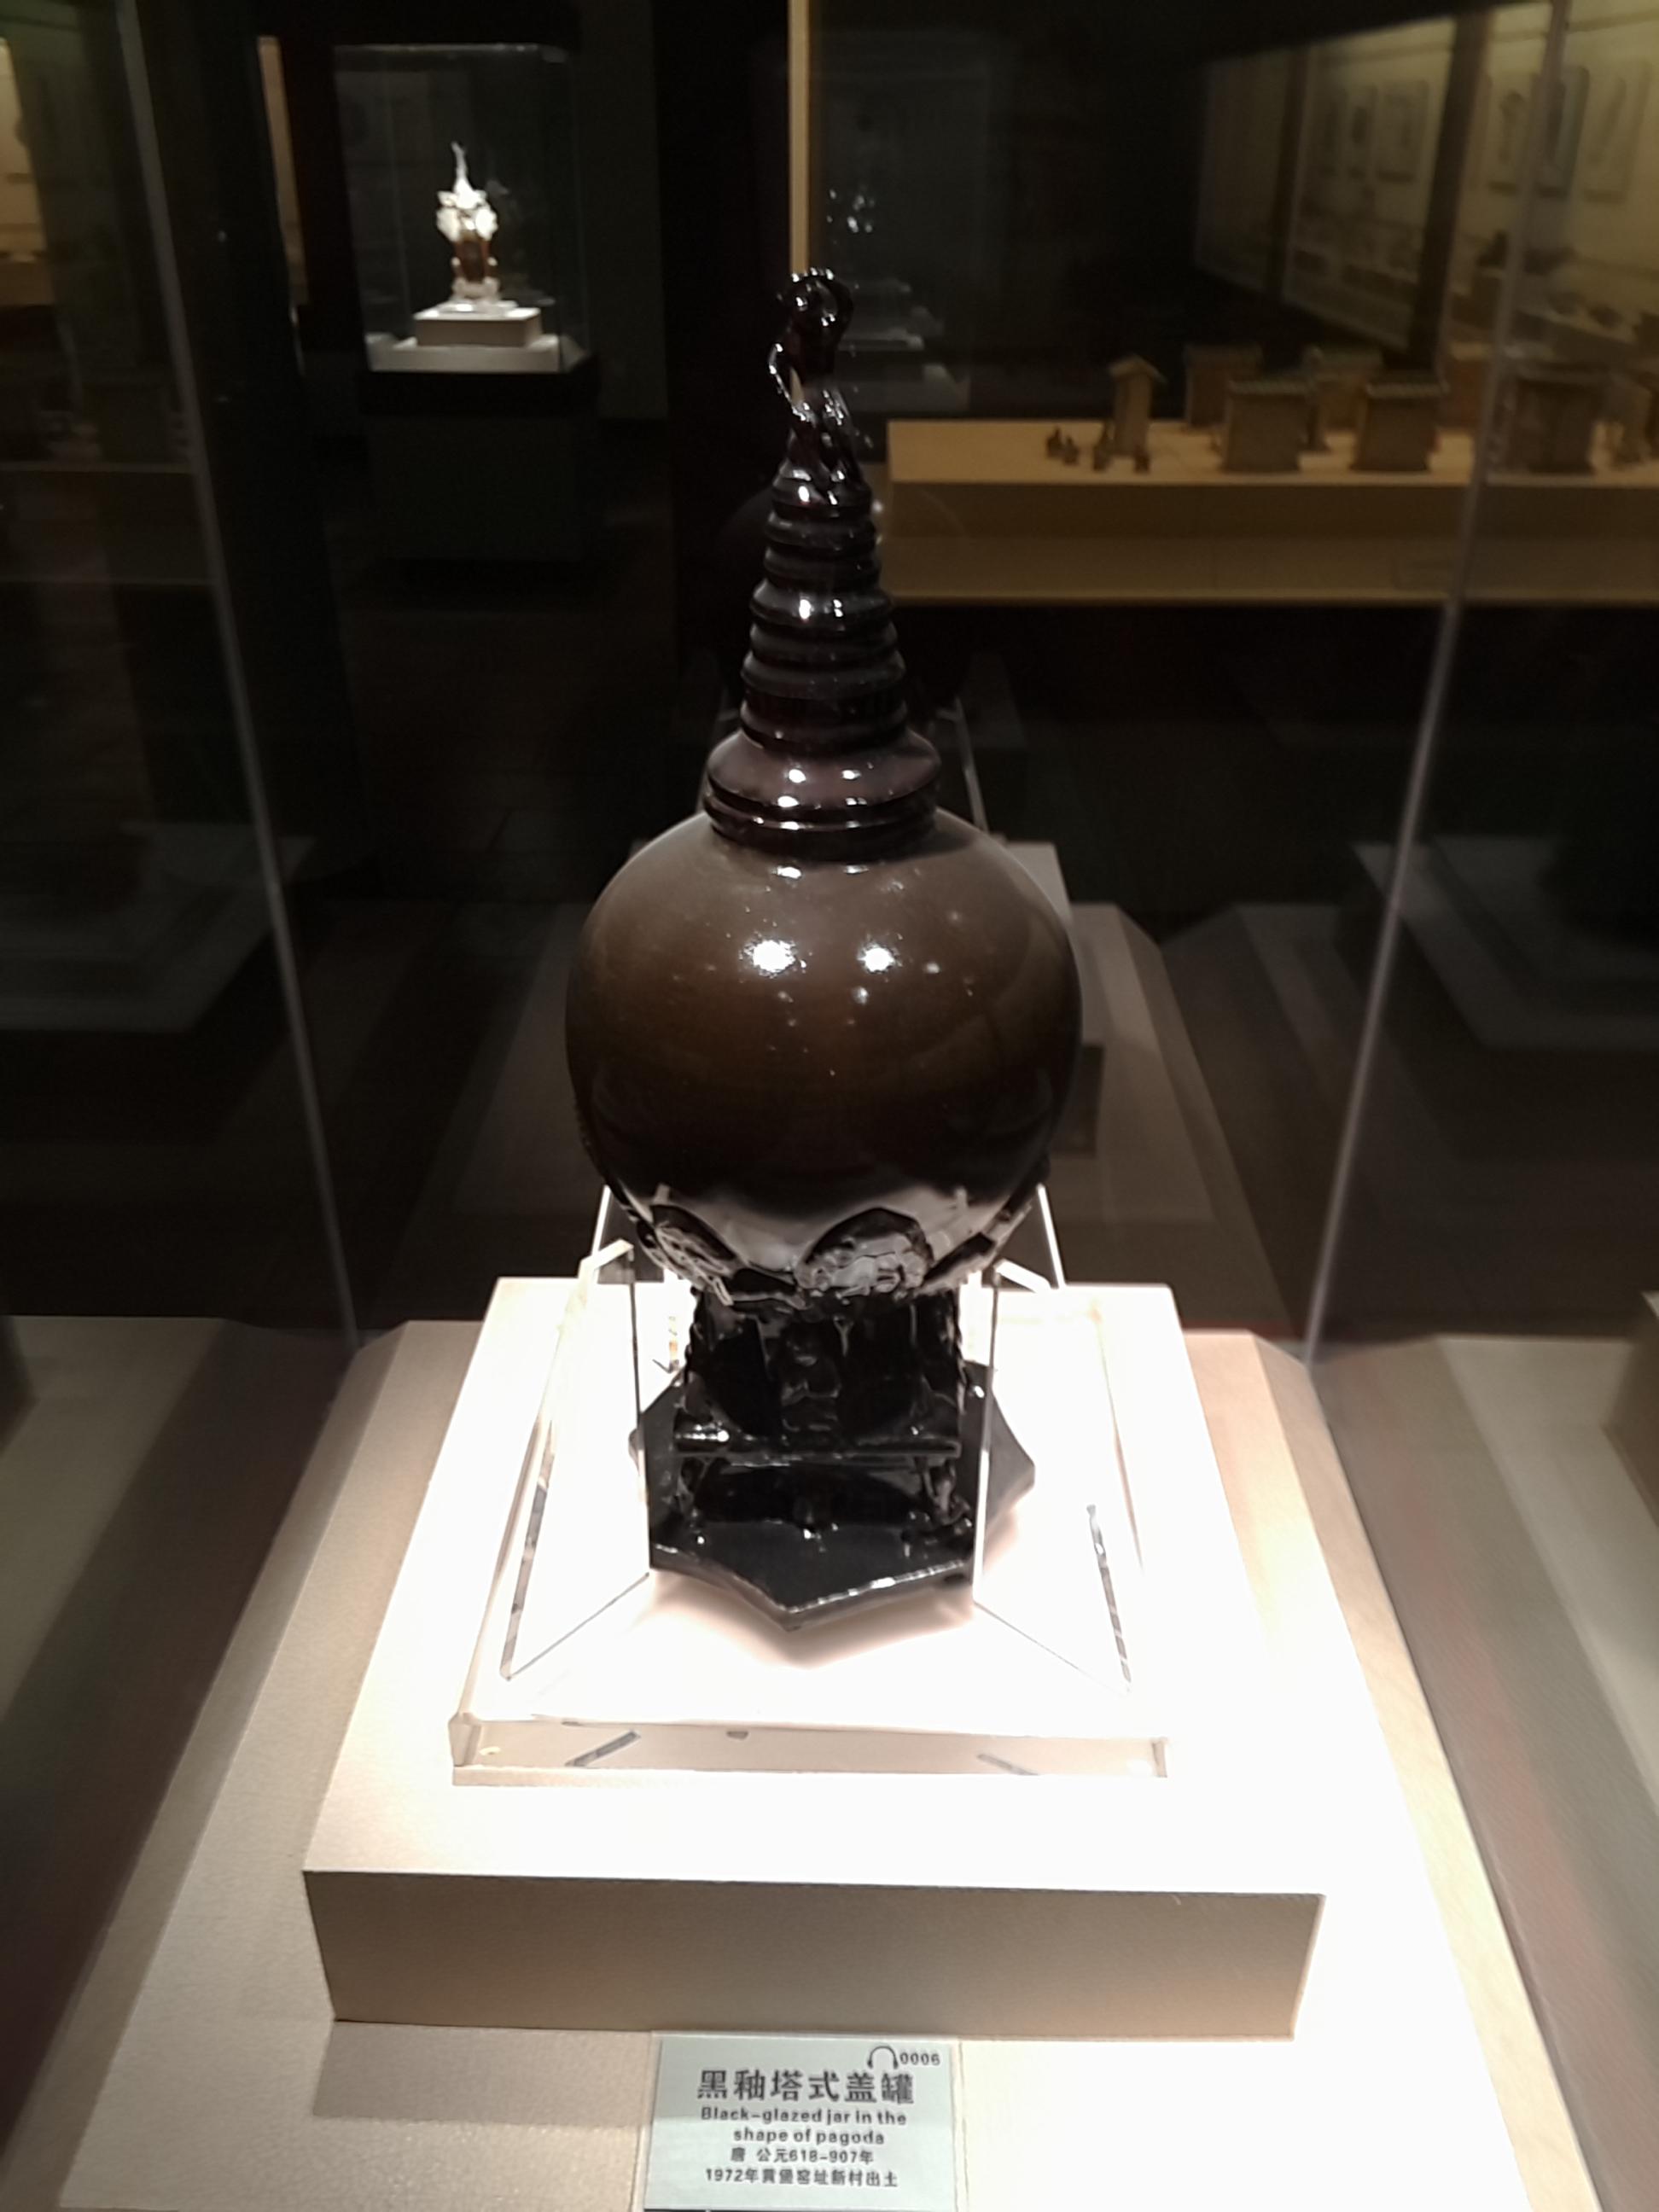 《南国青瓷——唐代水车窑展》即将在中山市博物馆展出 | 中山市博物馆